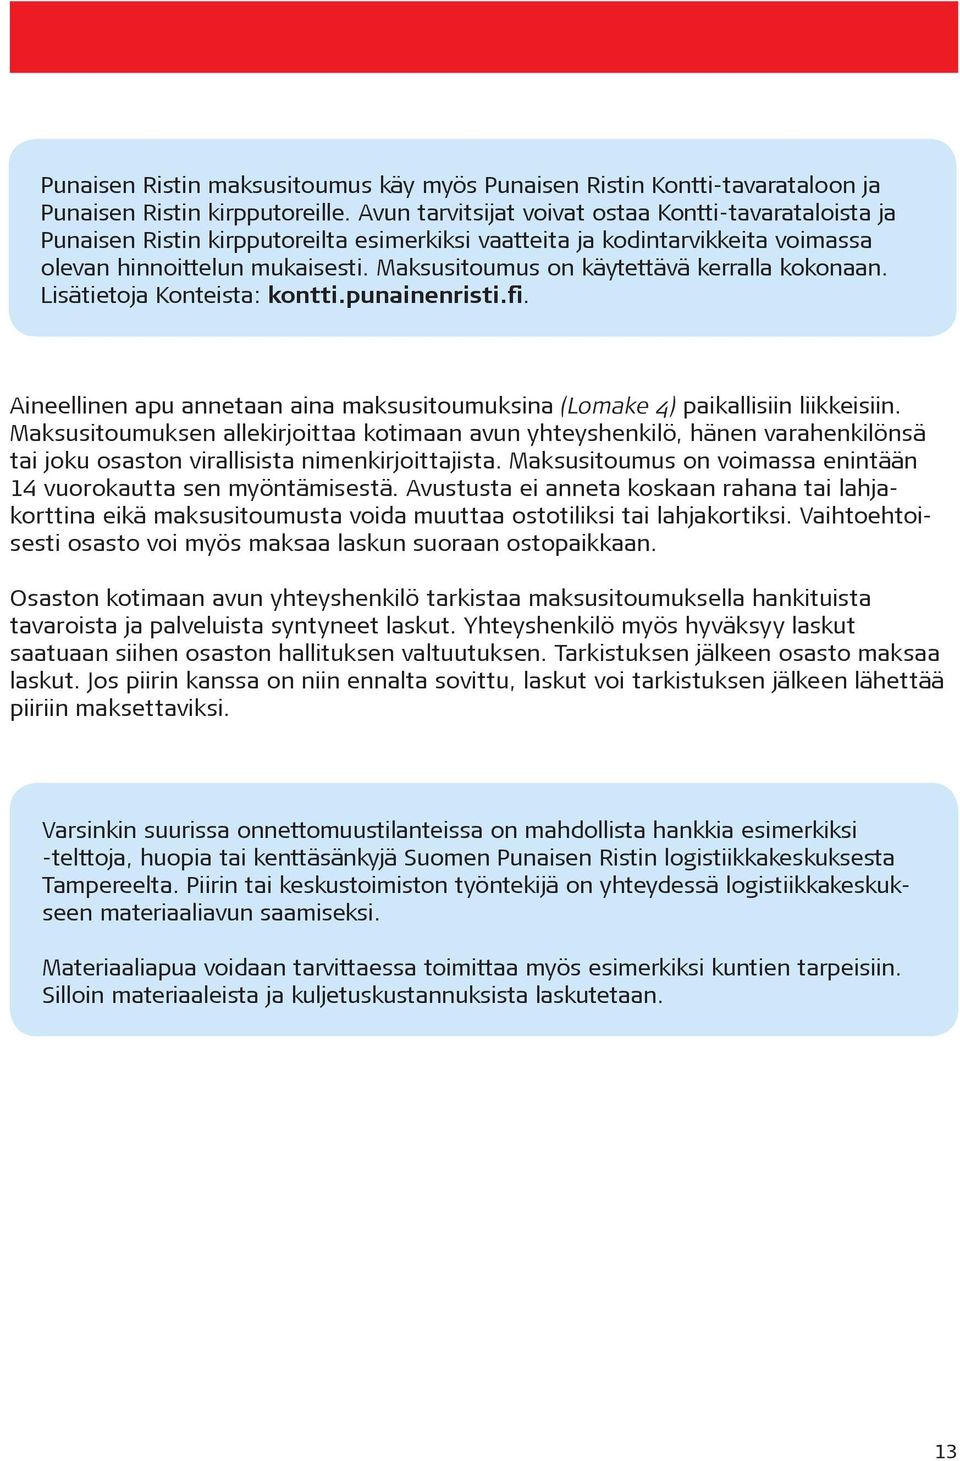 Maksusitoumus on käytettävä kerralla kokonaan. Lisätietoja Konteista: kontti.punainenristi.fi. Aineellinen apu annetaan aina maksusitoumuksina (Lomake 4) paikallisiin liikkeisiin.